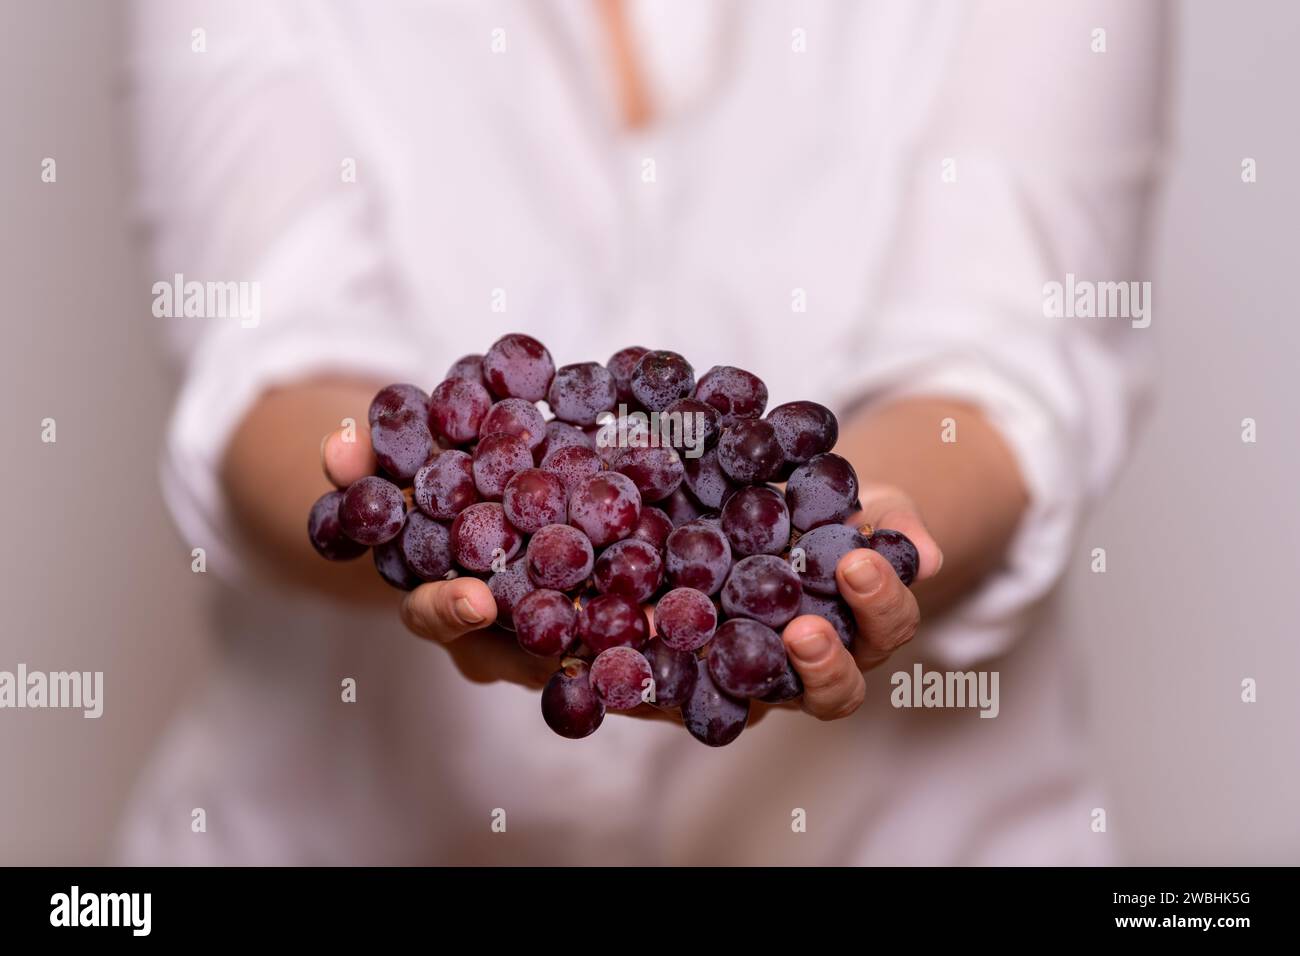 Donna con camicia bianca e sfondo bianco che tiene in mano un mucchio di uva rossa. Concetto di vinificazione. Foto Stock